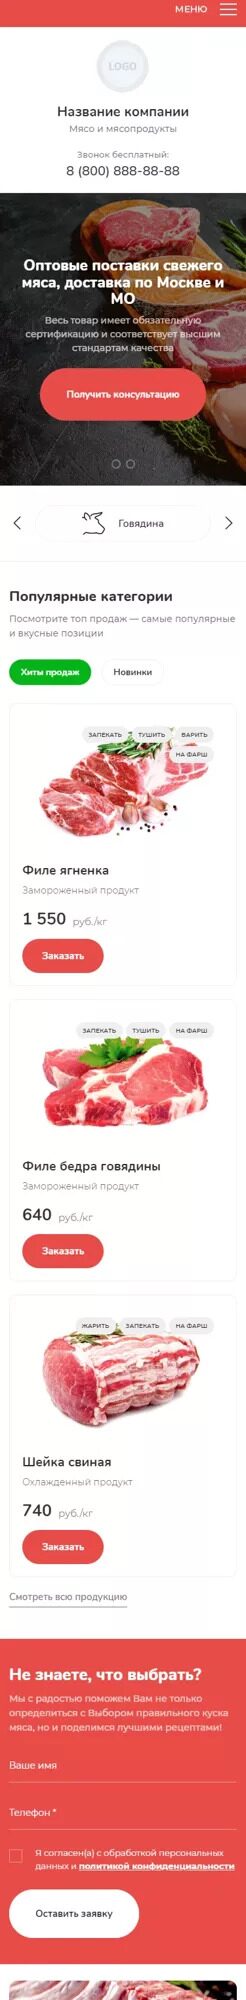 Готовый Сайт-Бизнес № 3937879 - Сайт мясопродуктов (Мобильная версия)